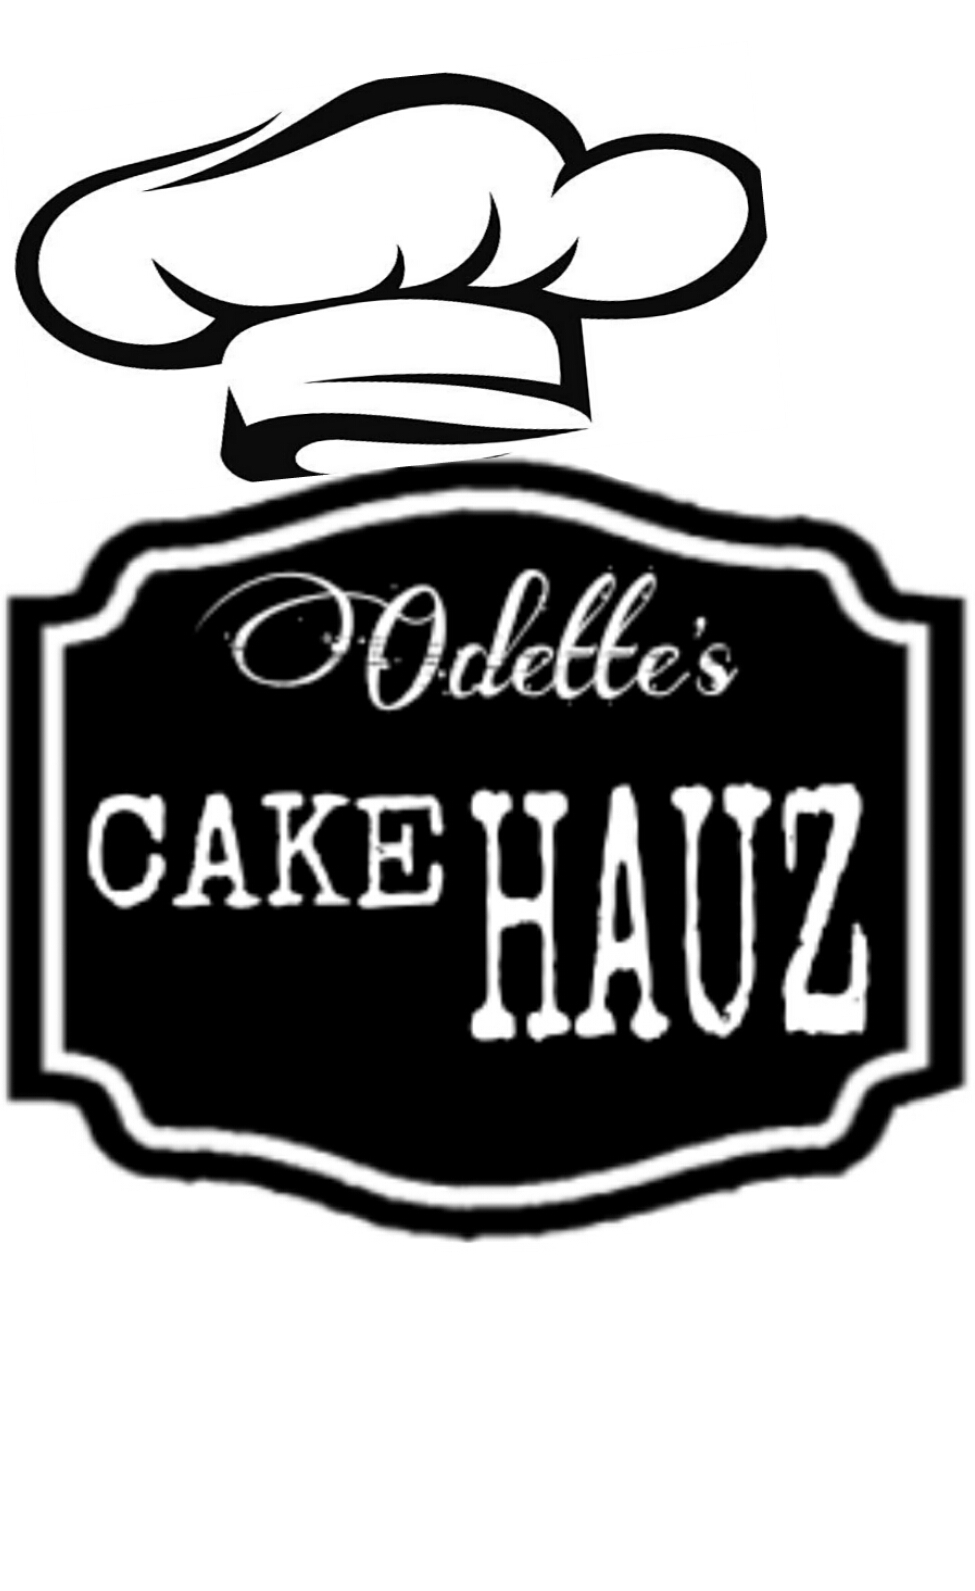 Odettes Cake Hauz